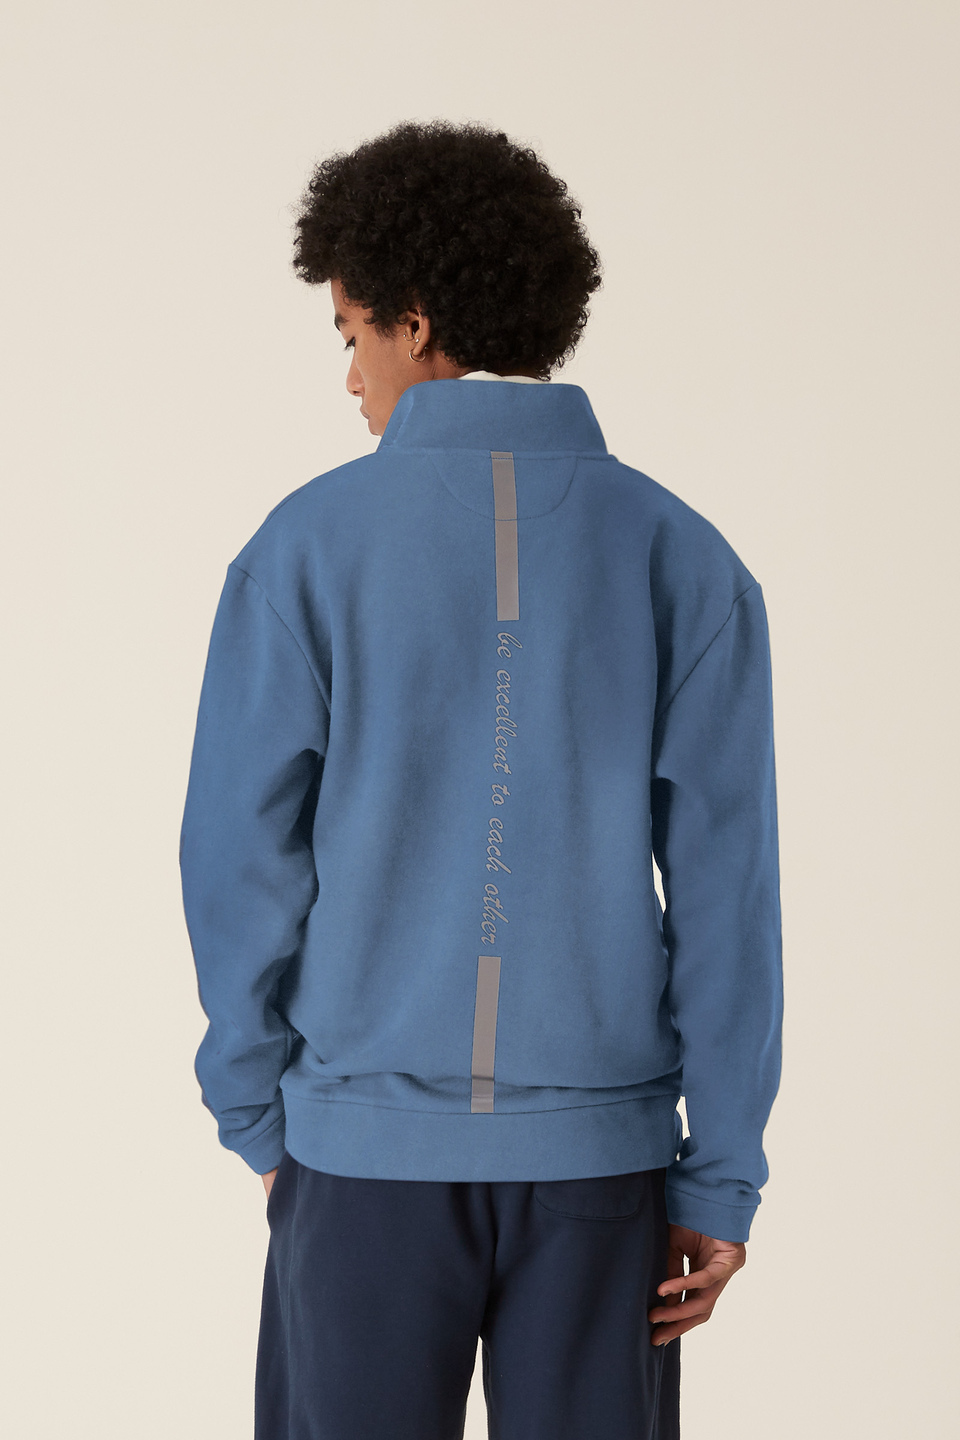 LMRTN Sweatshirt mit hohem Kragen | La Martina - Official Online Shop